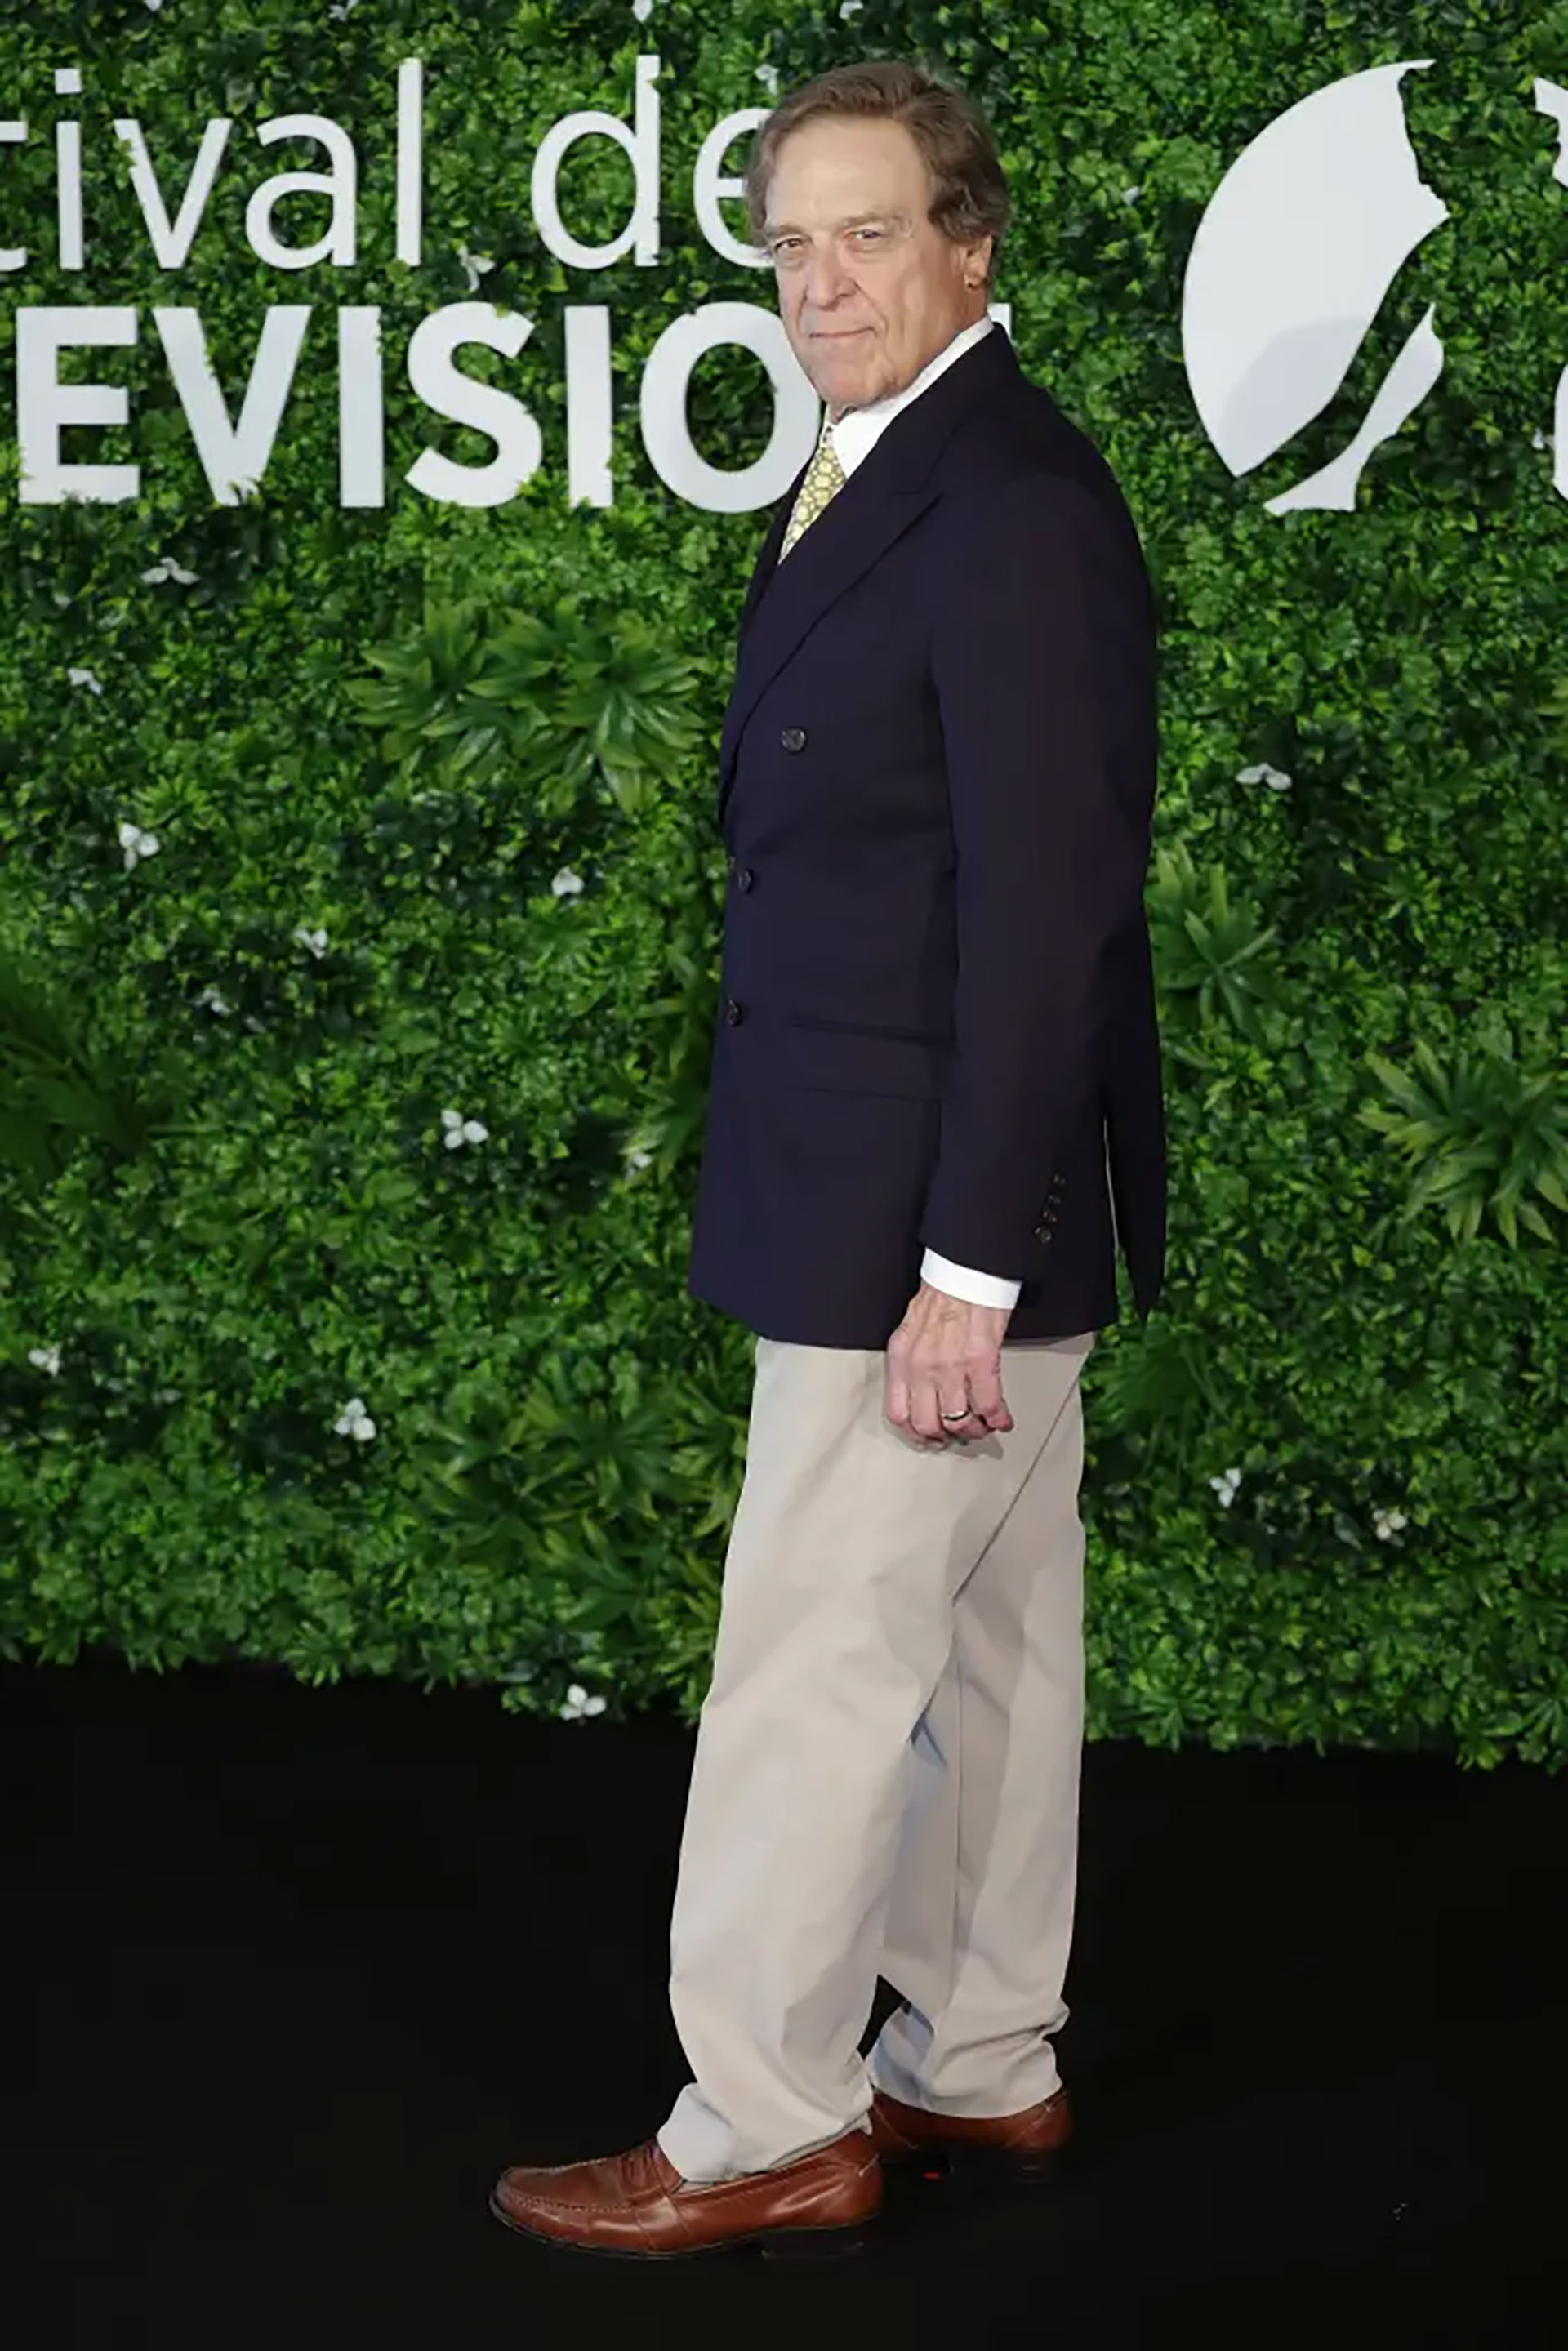 Durante la más reciente edición del Festival de Televisión de Montecarlo, John Goodman apareció con una extraordinaria pérdida de peso de 90 kilos
Getty